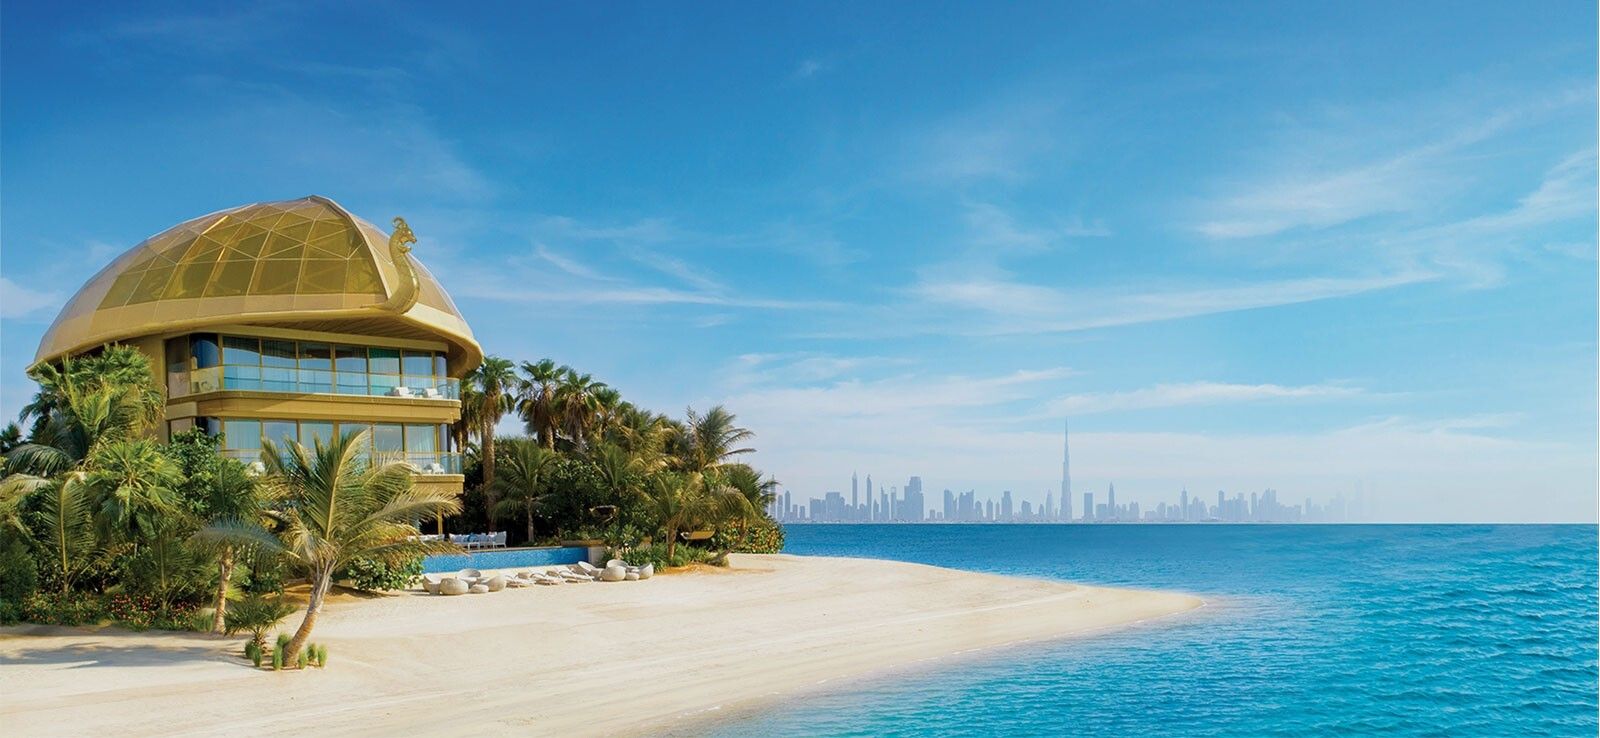 Vendita Villa Dubai Mare Ultra-Lusso | luxforsale.it